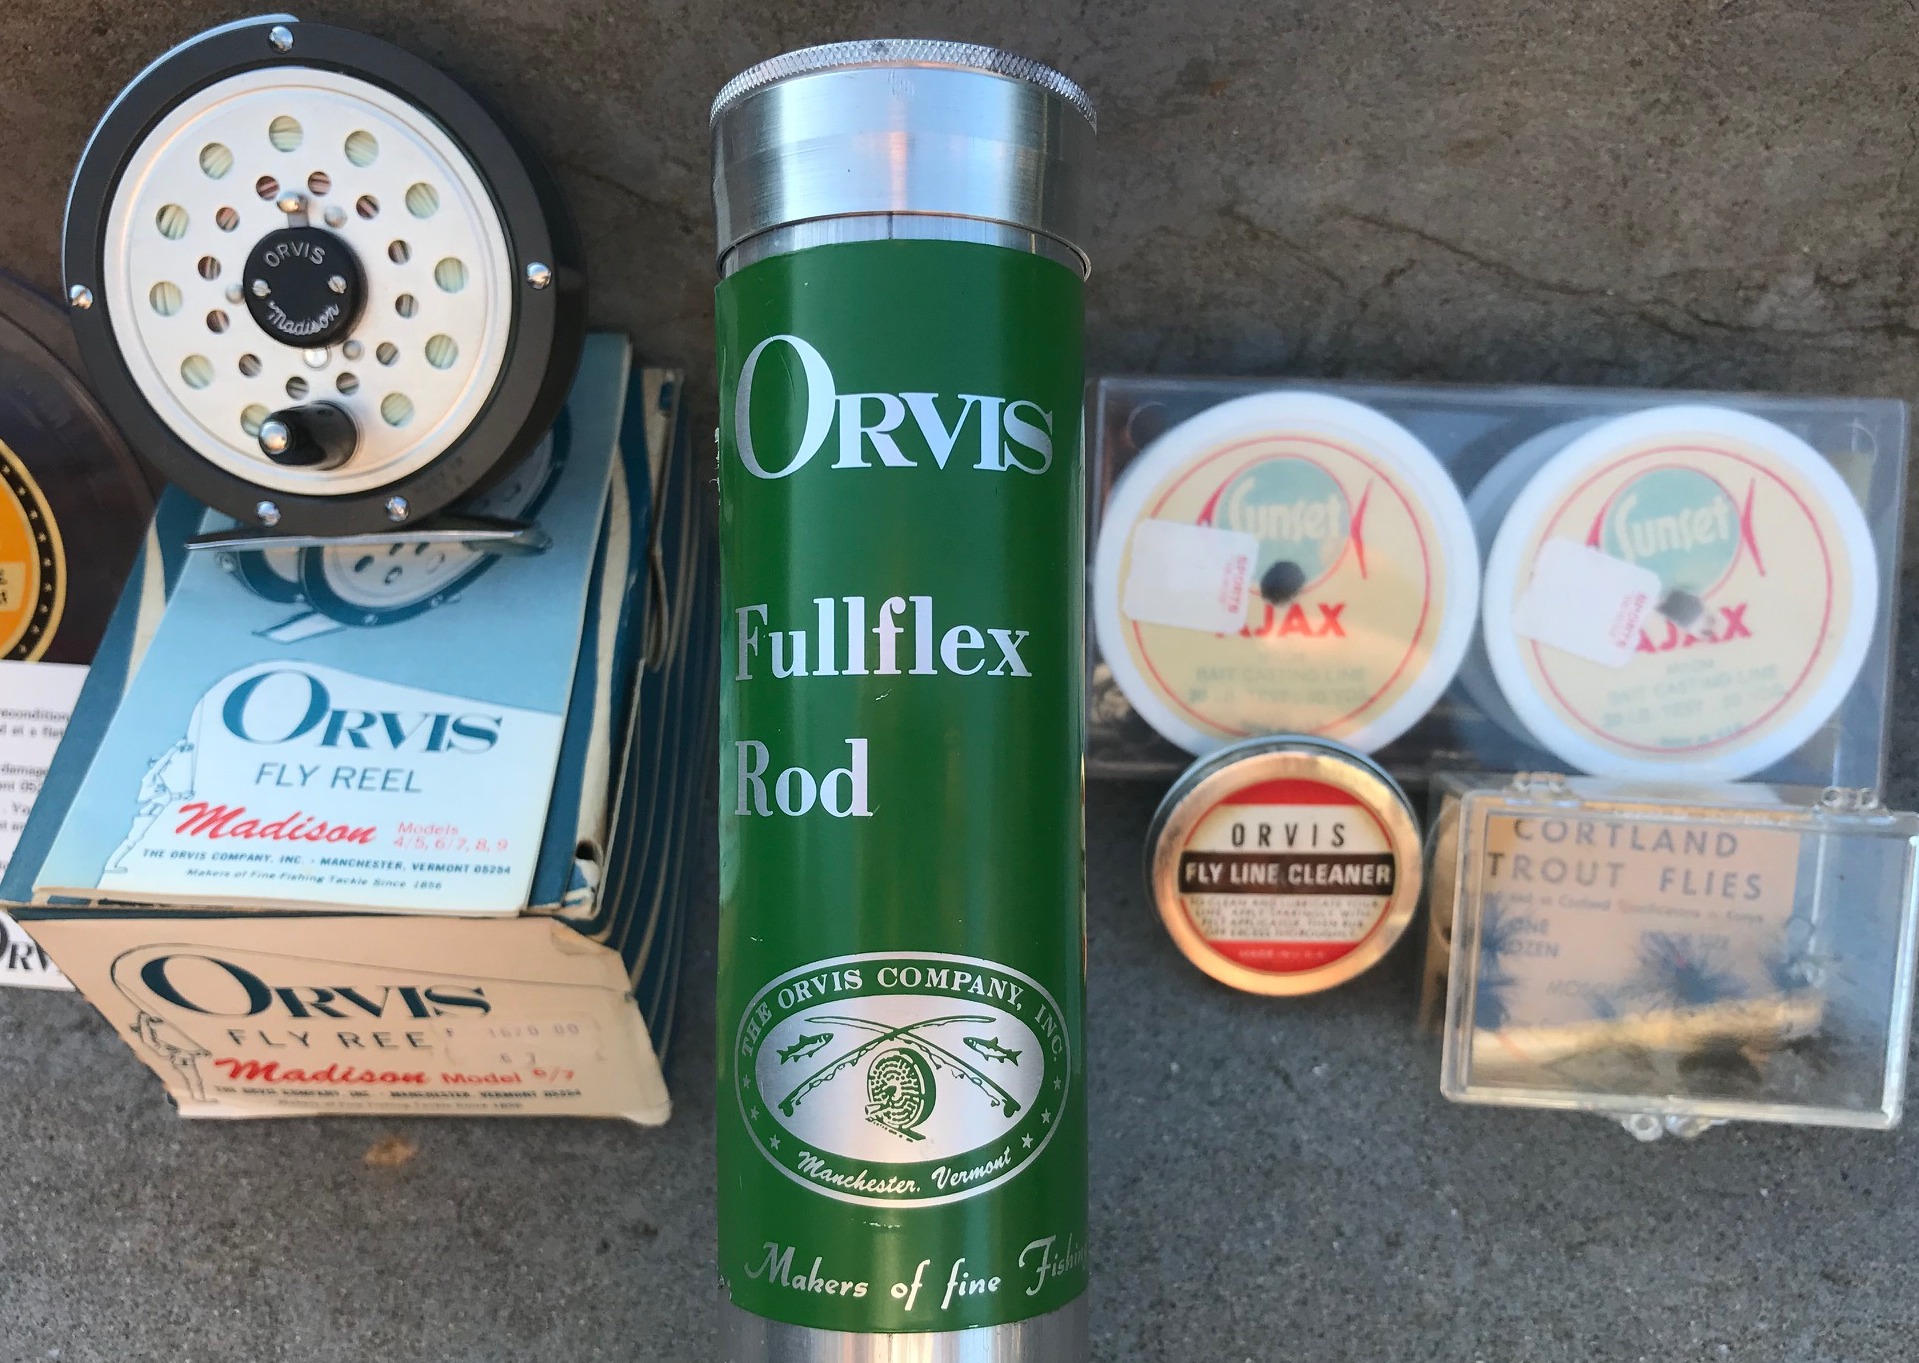 ORVIS FULLFLEX Fly-and-Spin PACK ROD オンライン割引品